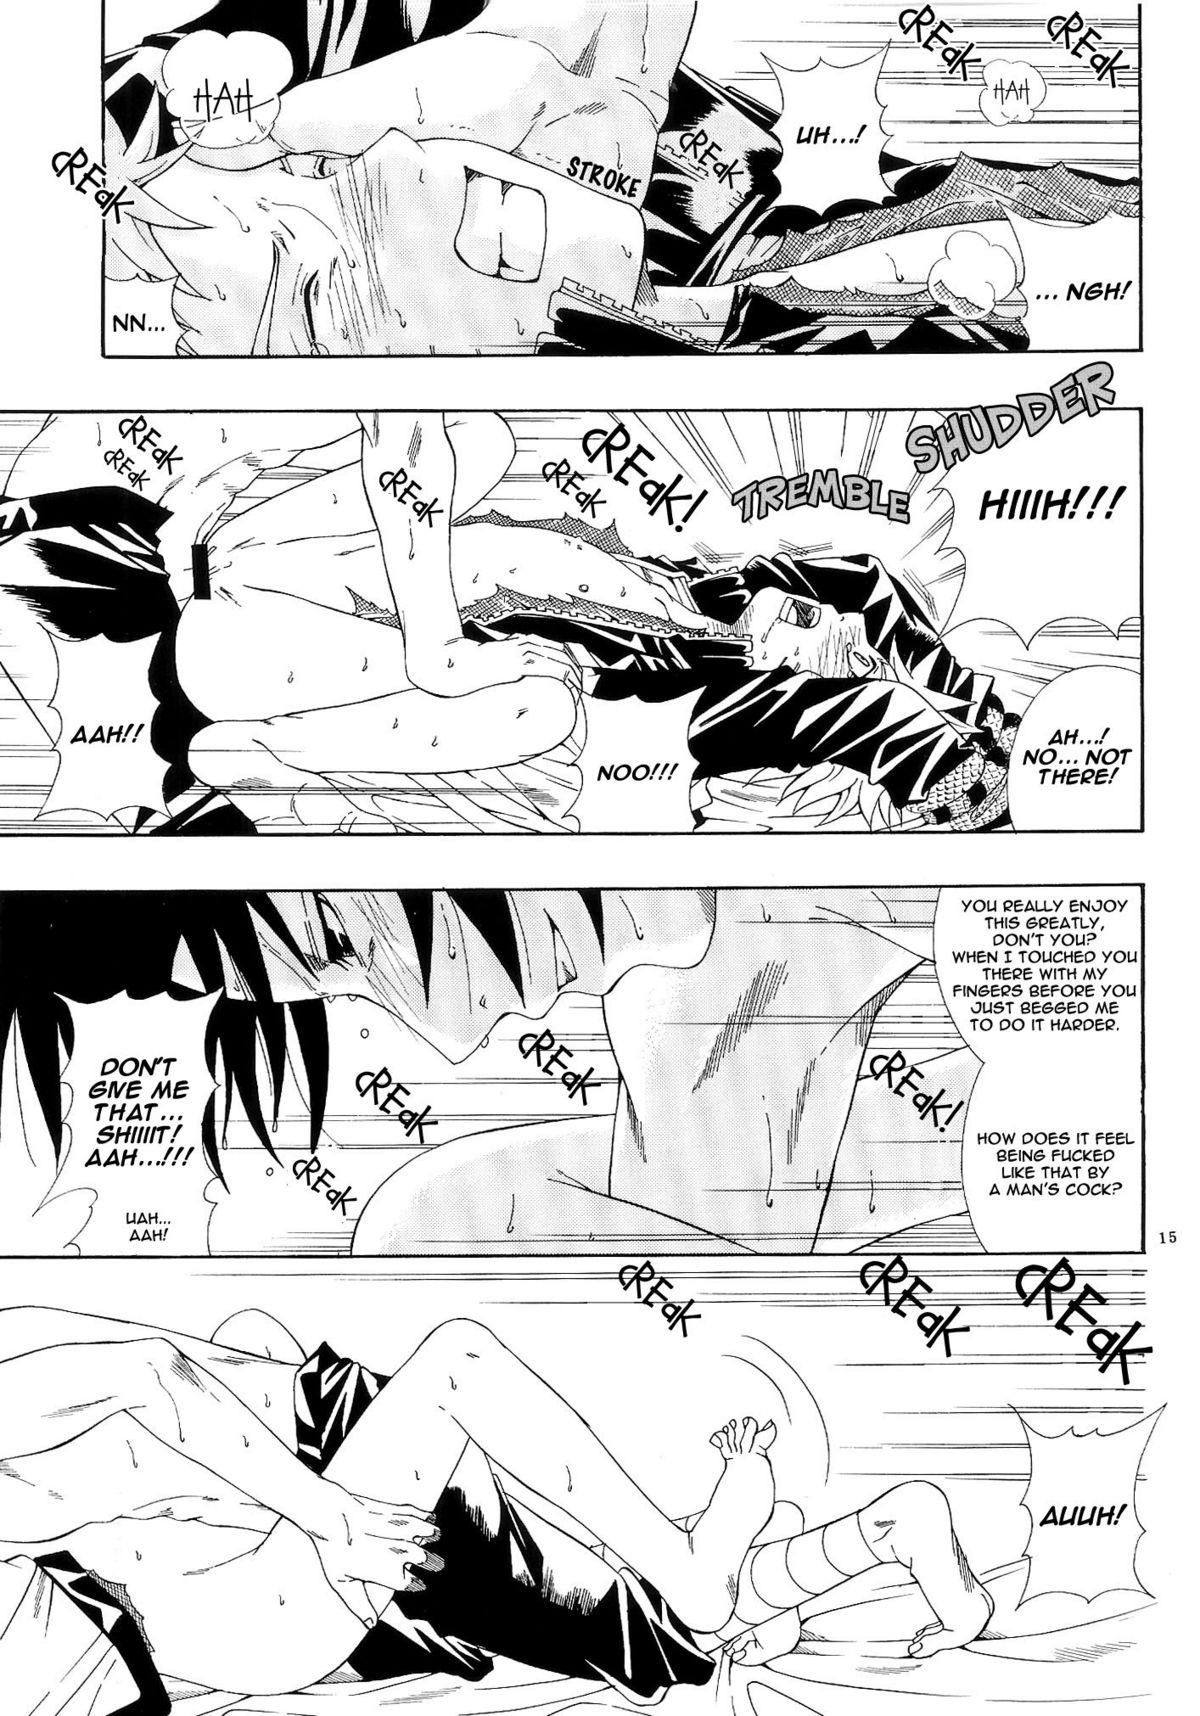 ERO ERO²: Volume 1.5  (NARUTO) [Sasuke X Naruto] YAOI -ENG- 13